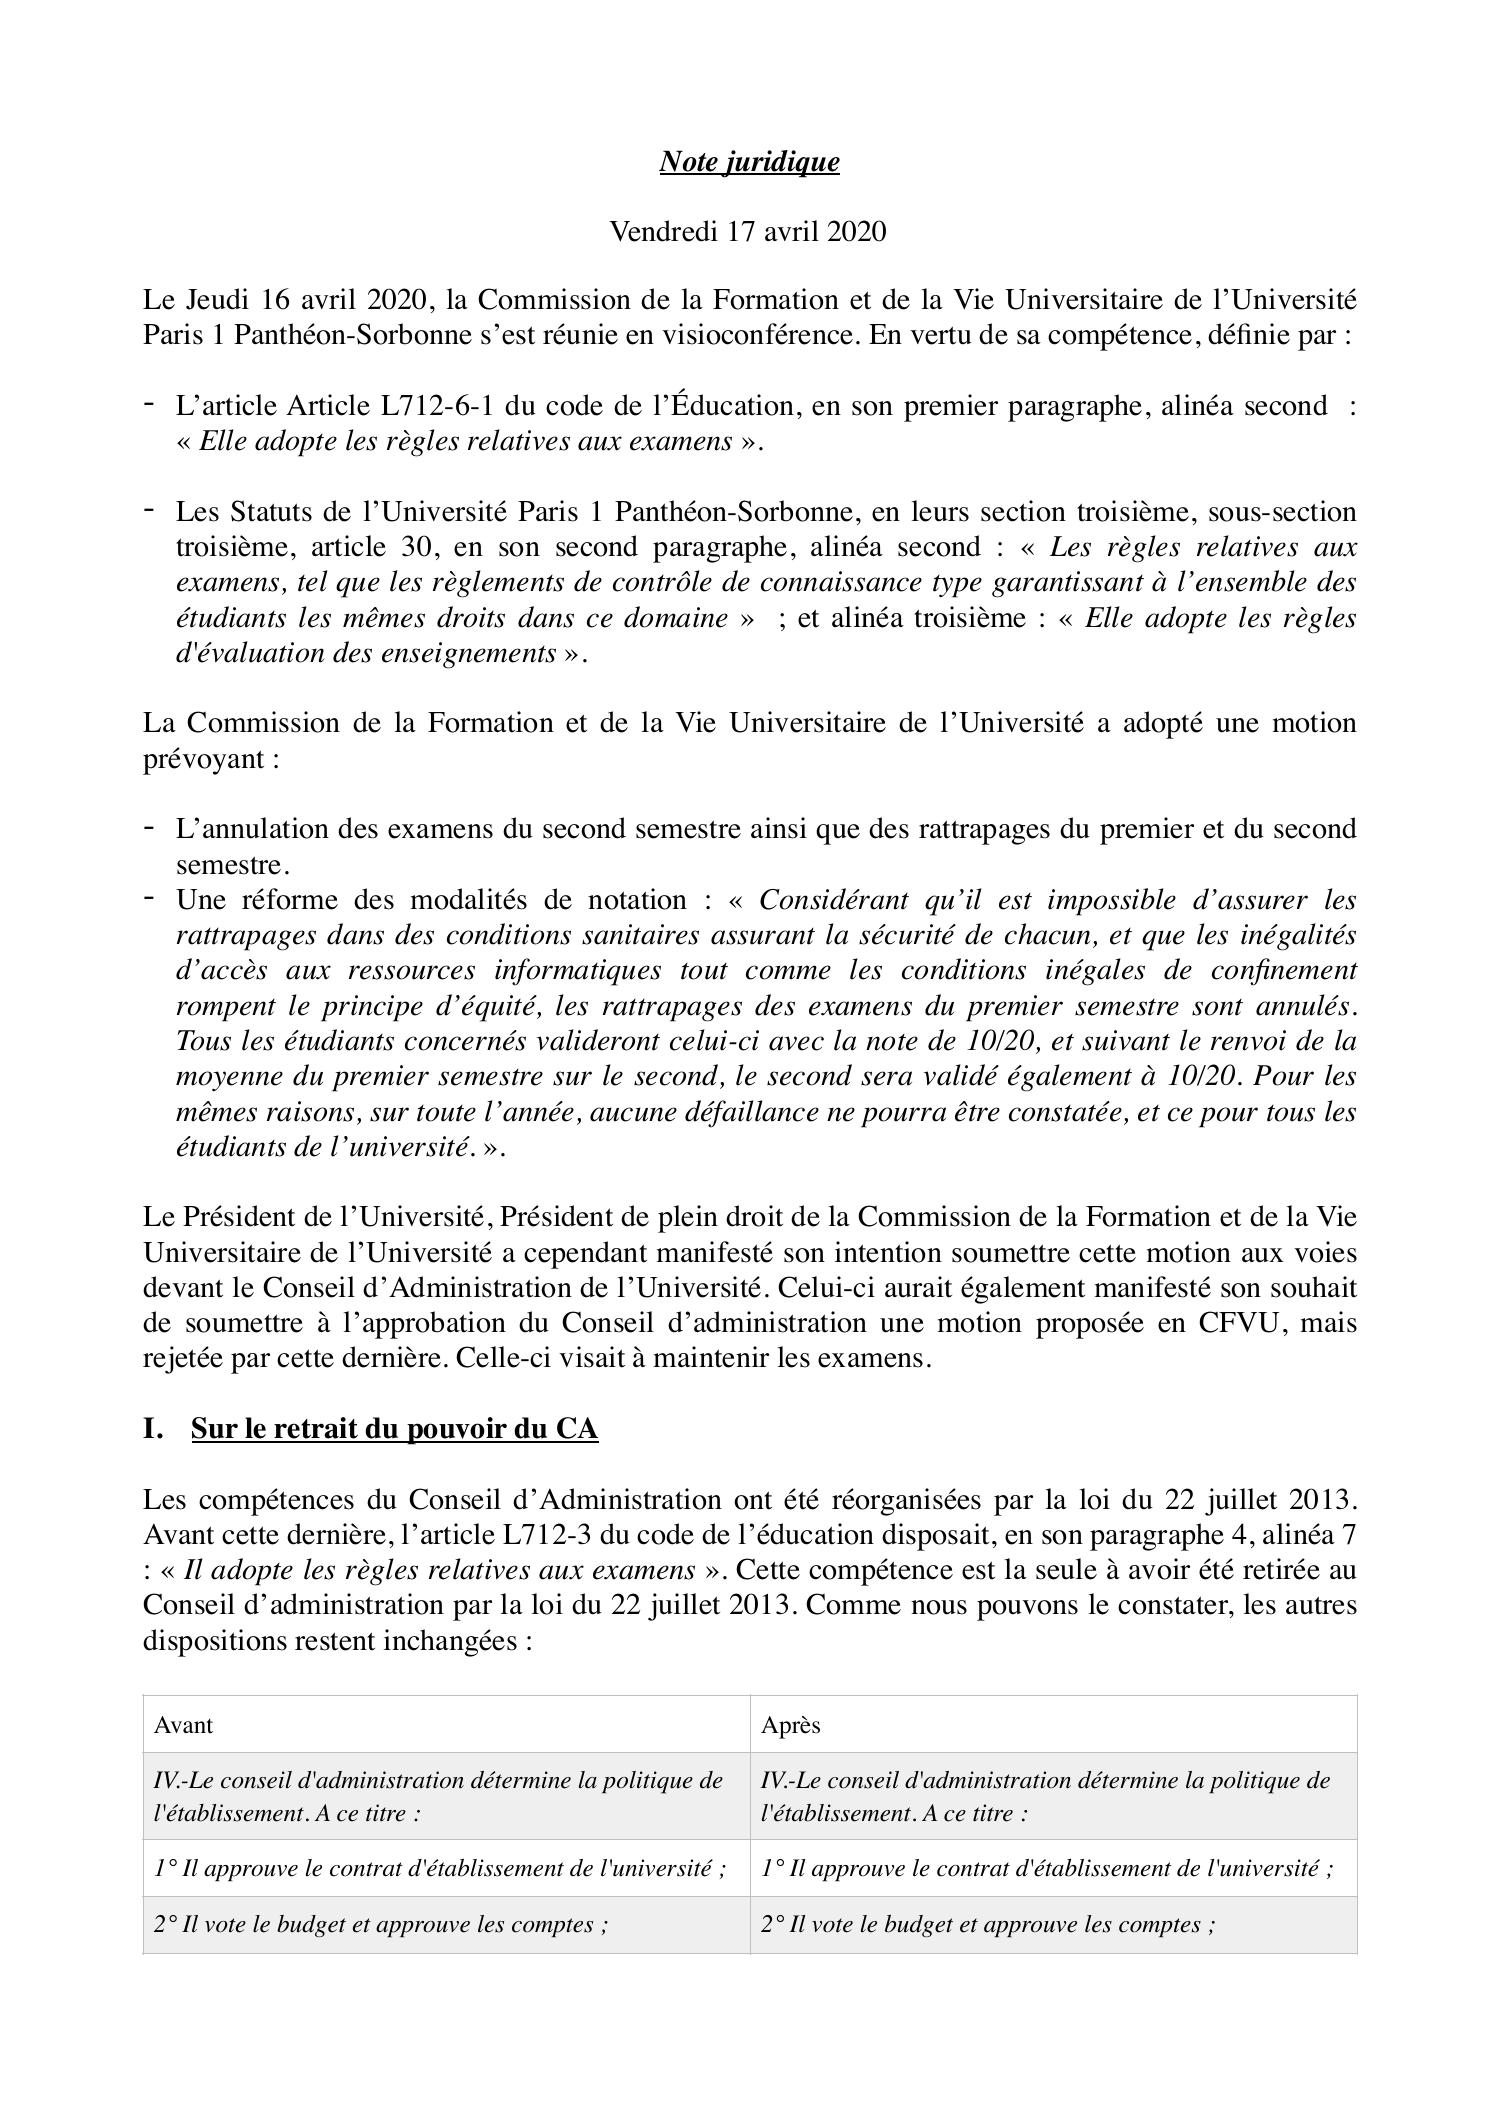 Note Juridique CFVUCA.pdf  DocDroid